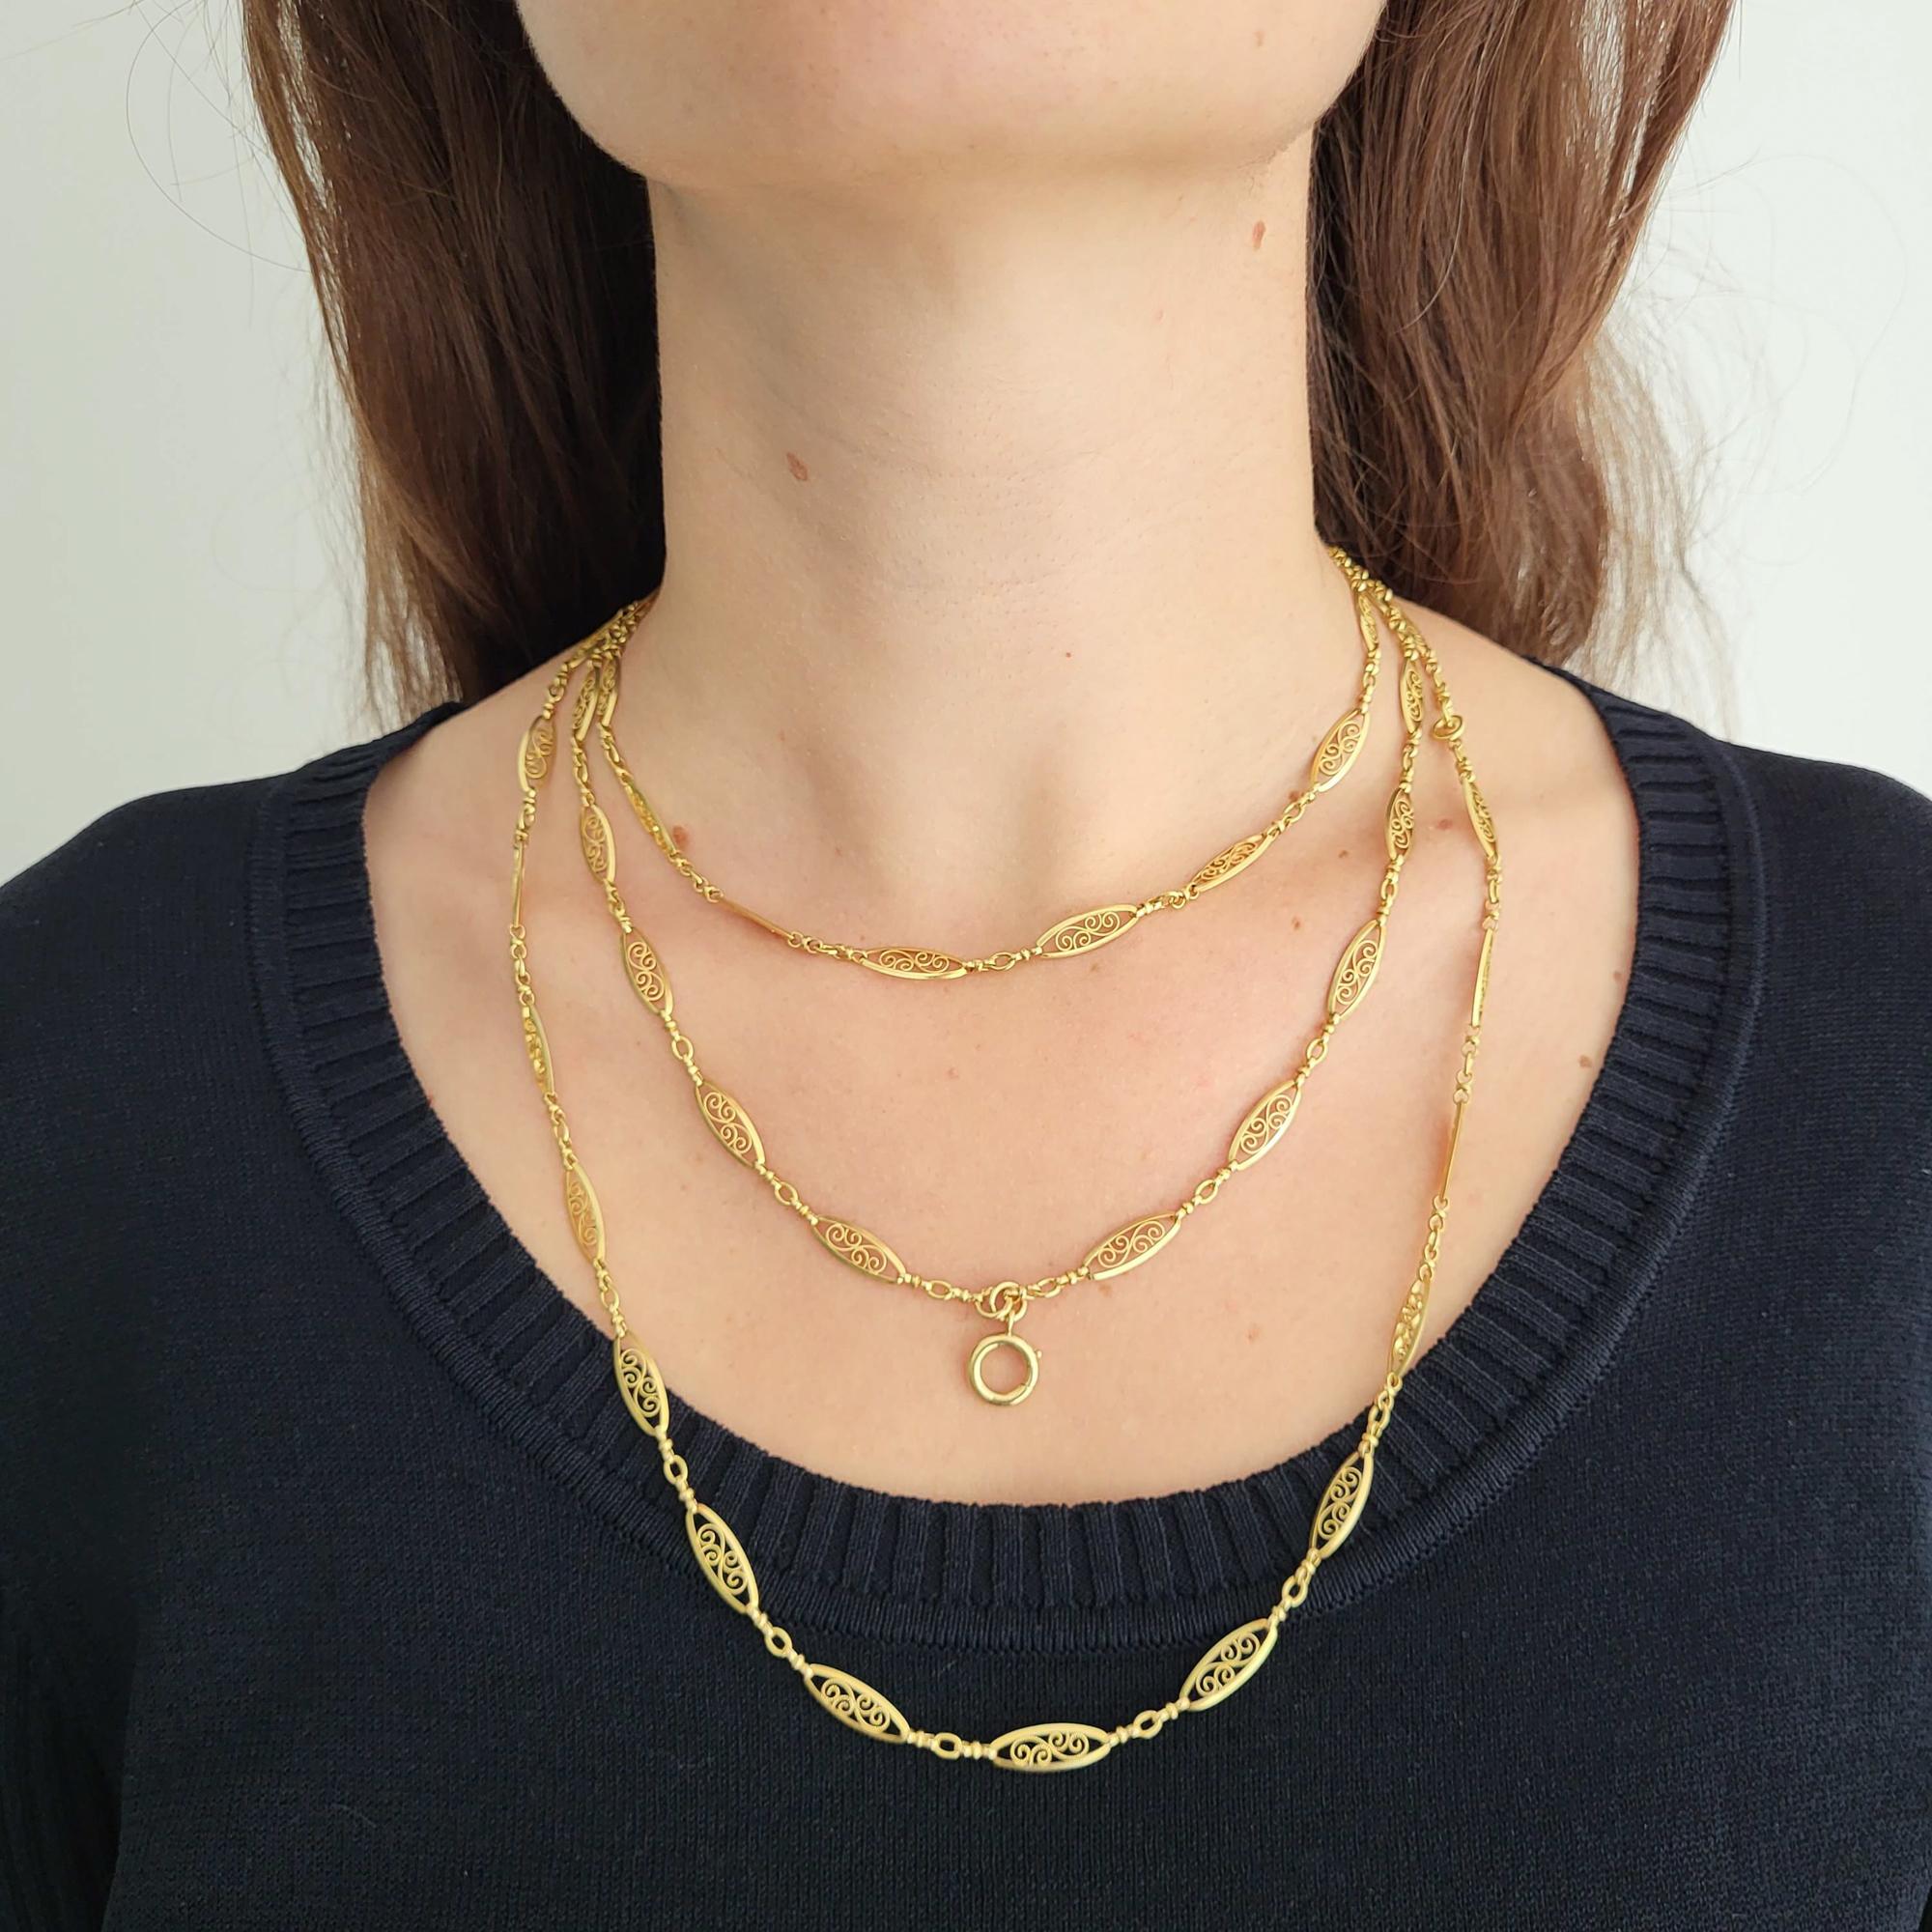 Antique 18k gold Sautoir necklace, 155cm long guard, Victorian double rope chain 13